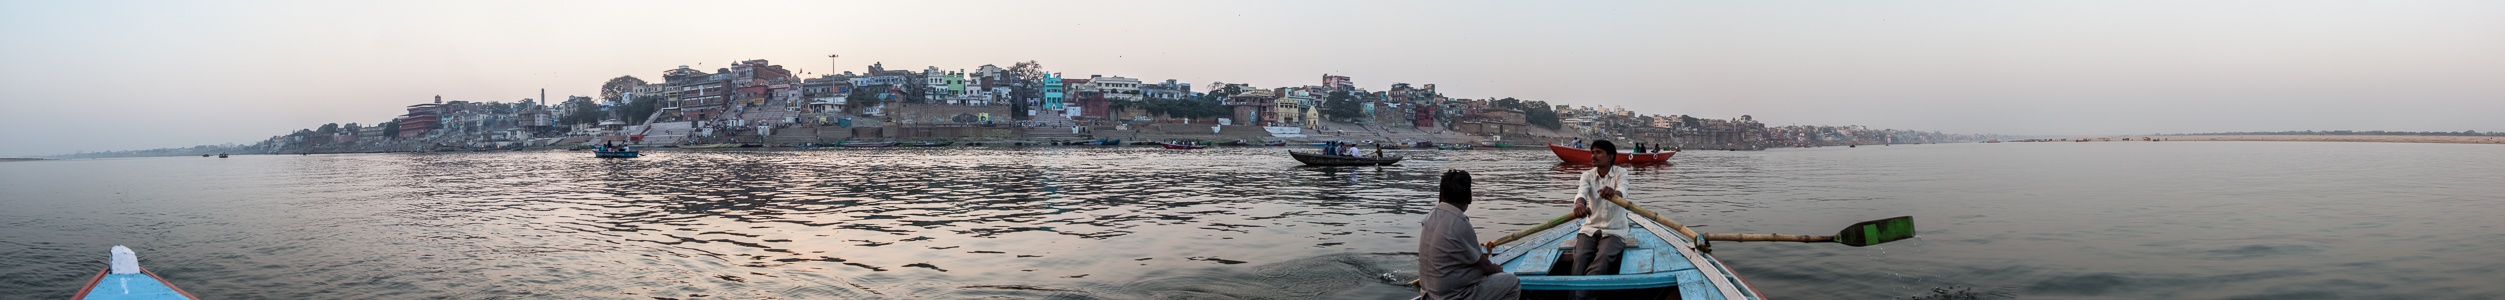 Ganges, Varanasi, Uttar Pradesh